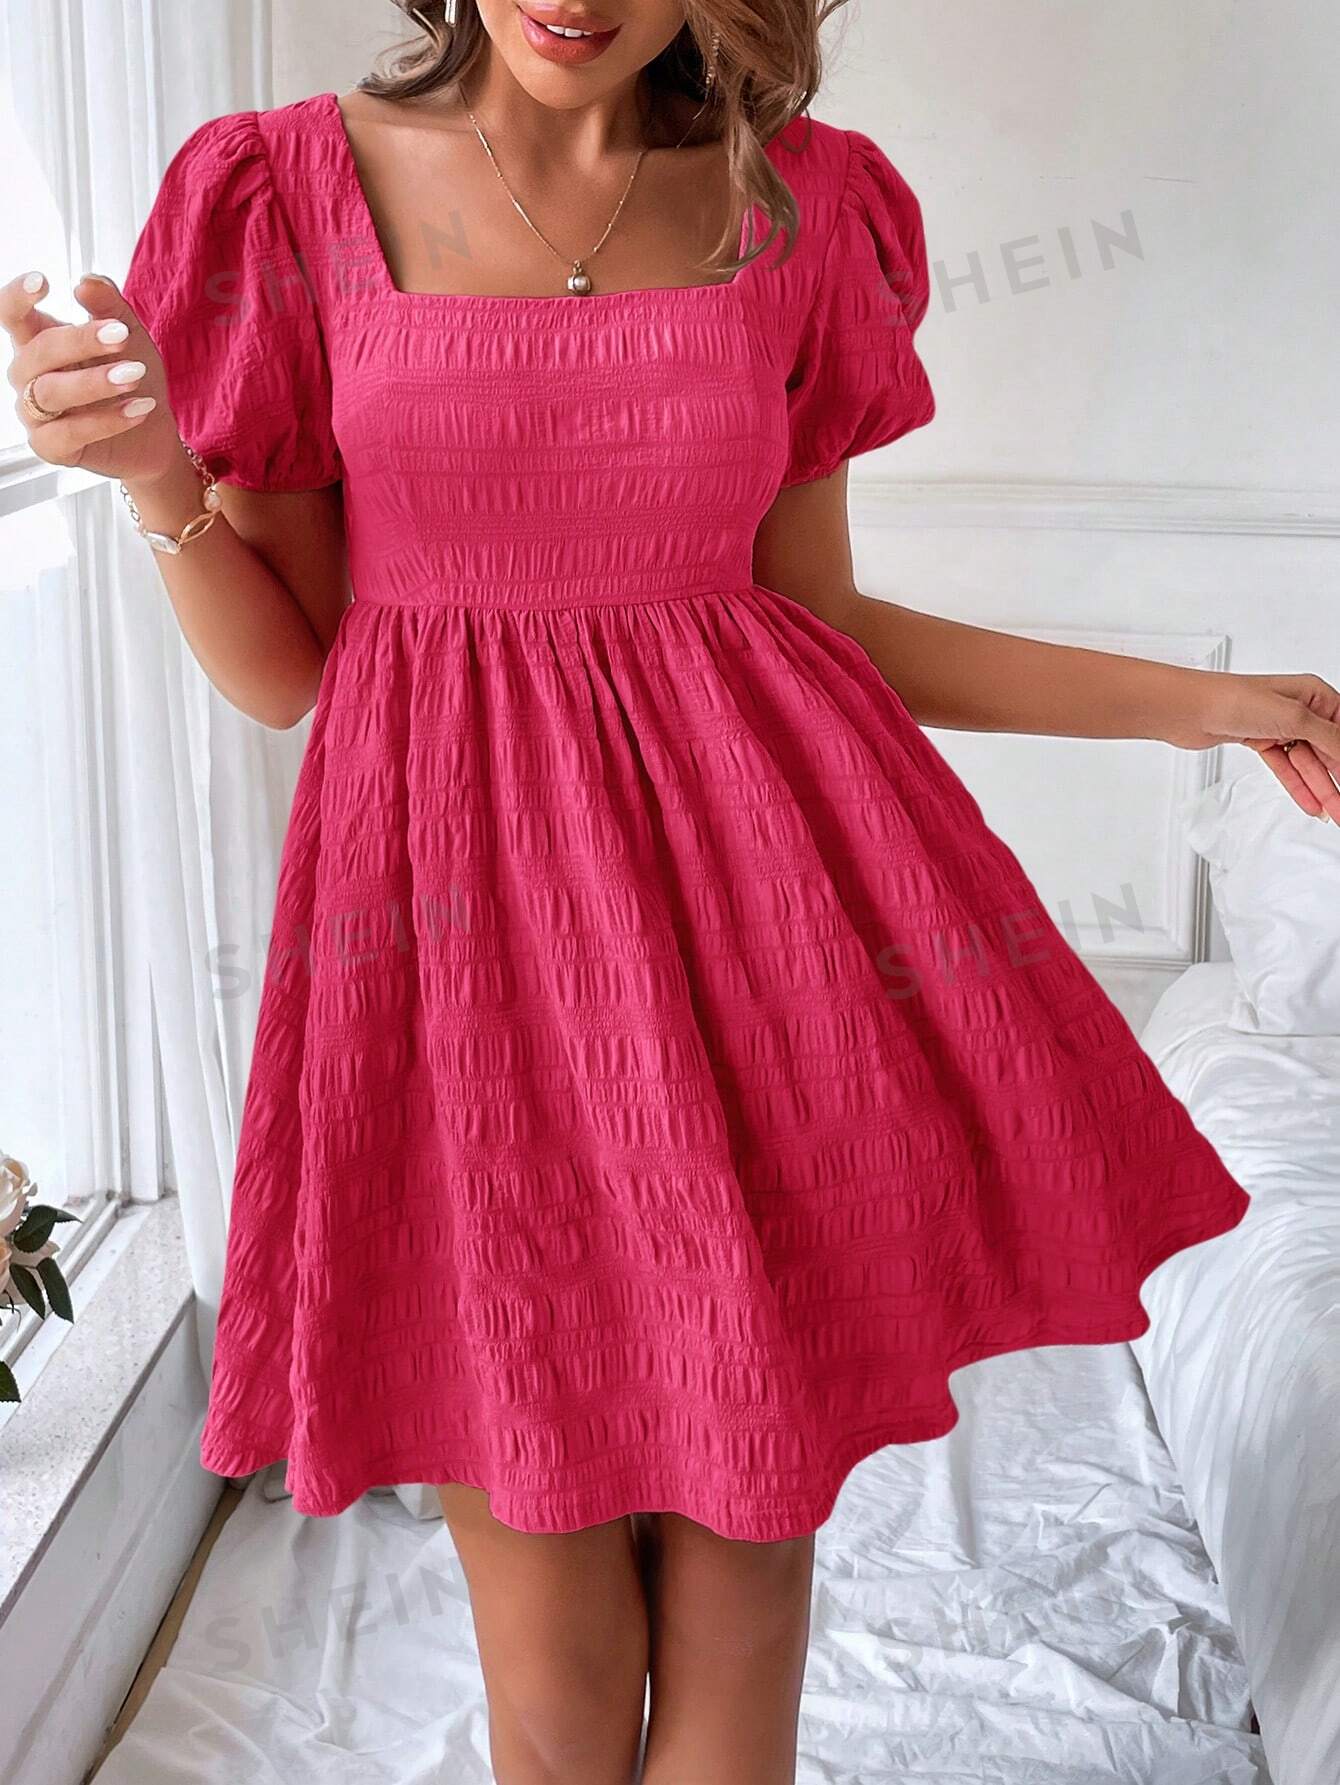 shein vcay женское платье с круглым вырезом и короткими рукавами пузырьками с цветочным принтом синий SHEIN VCAY Женское платье с квадратным вырезом и короткими пышными рукавами, ярко-розовый